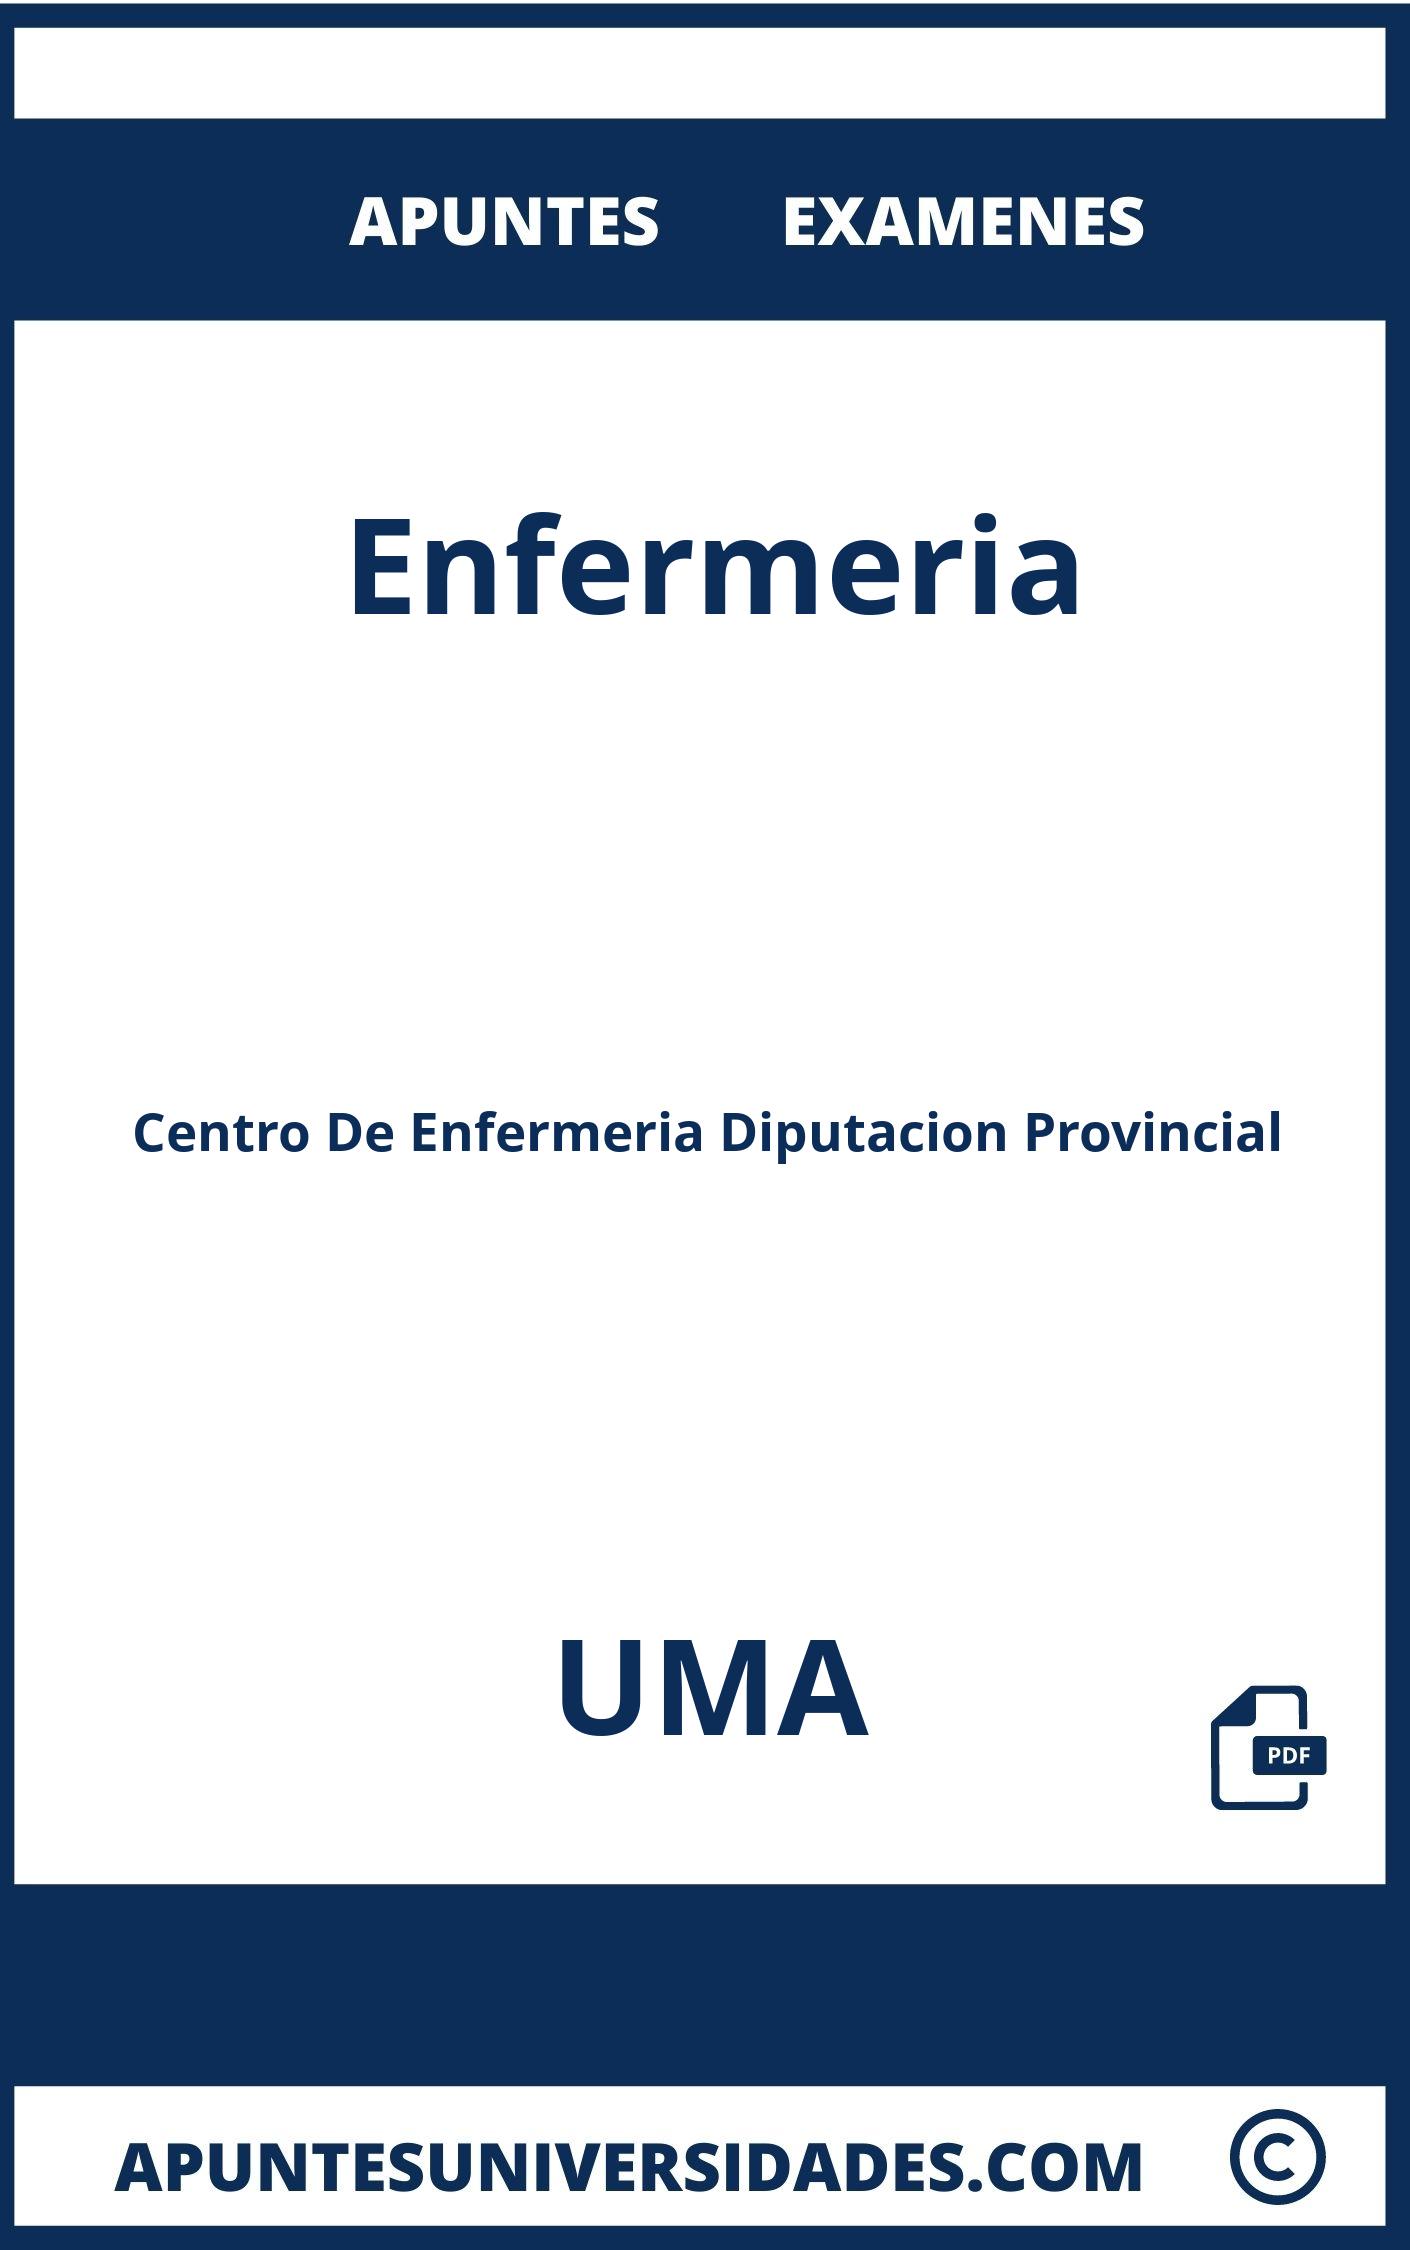 Examenes Apuntes Enfermeria UMA